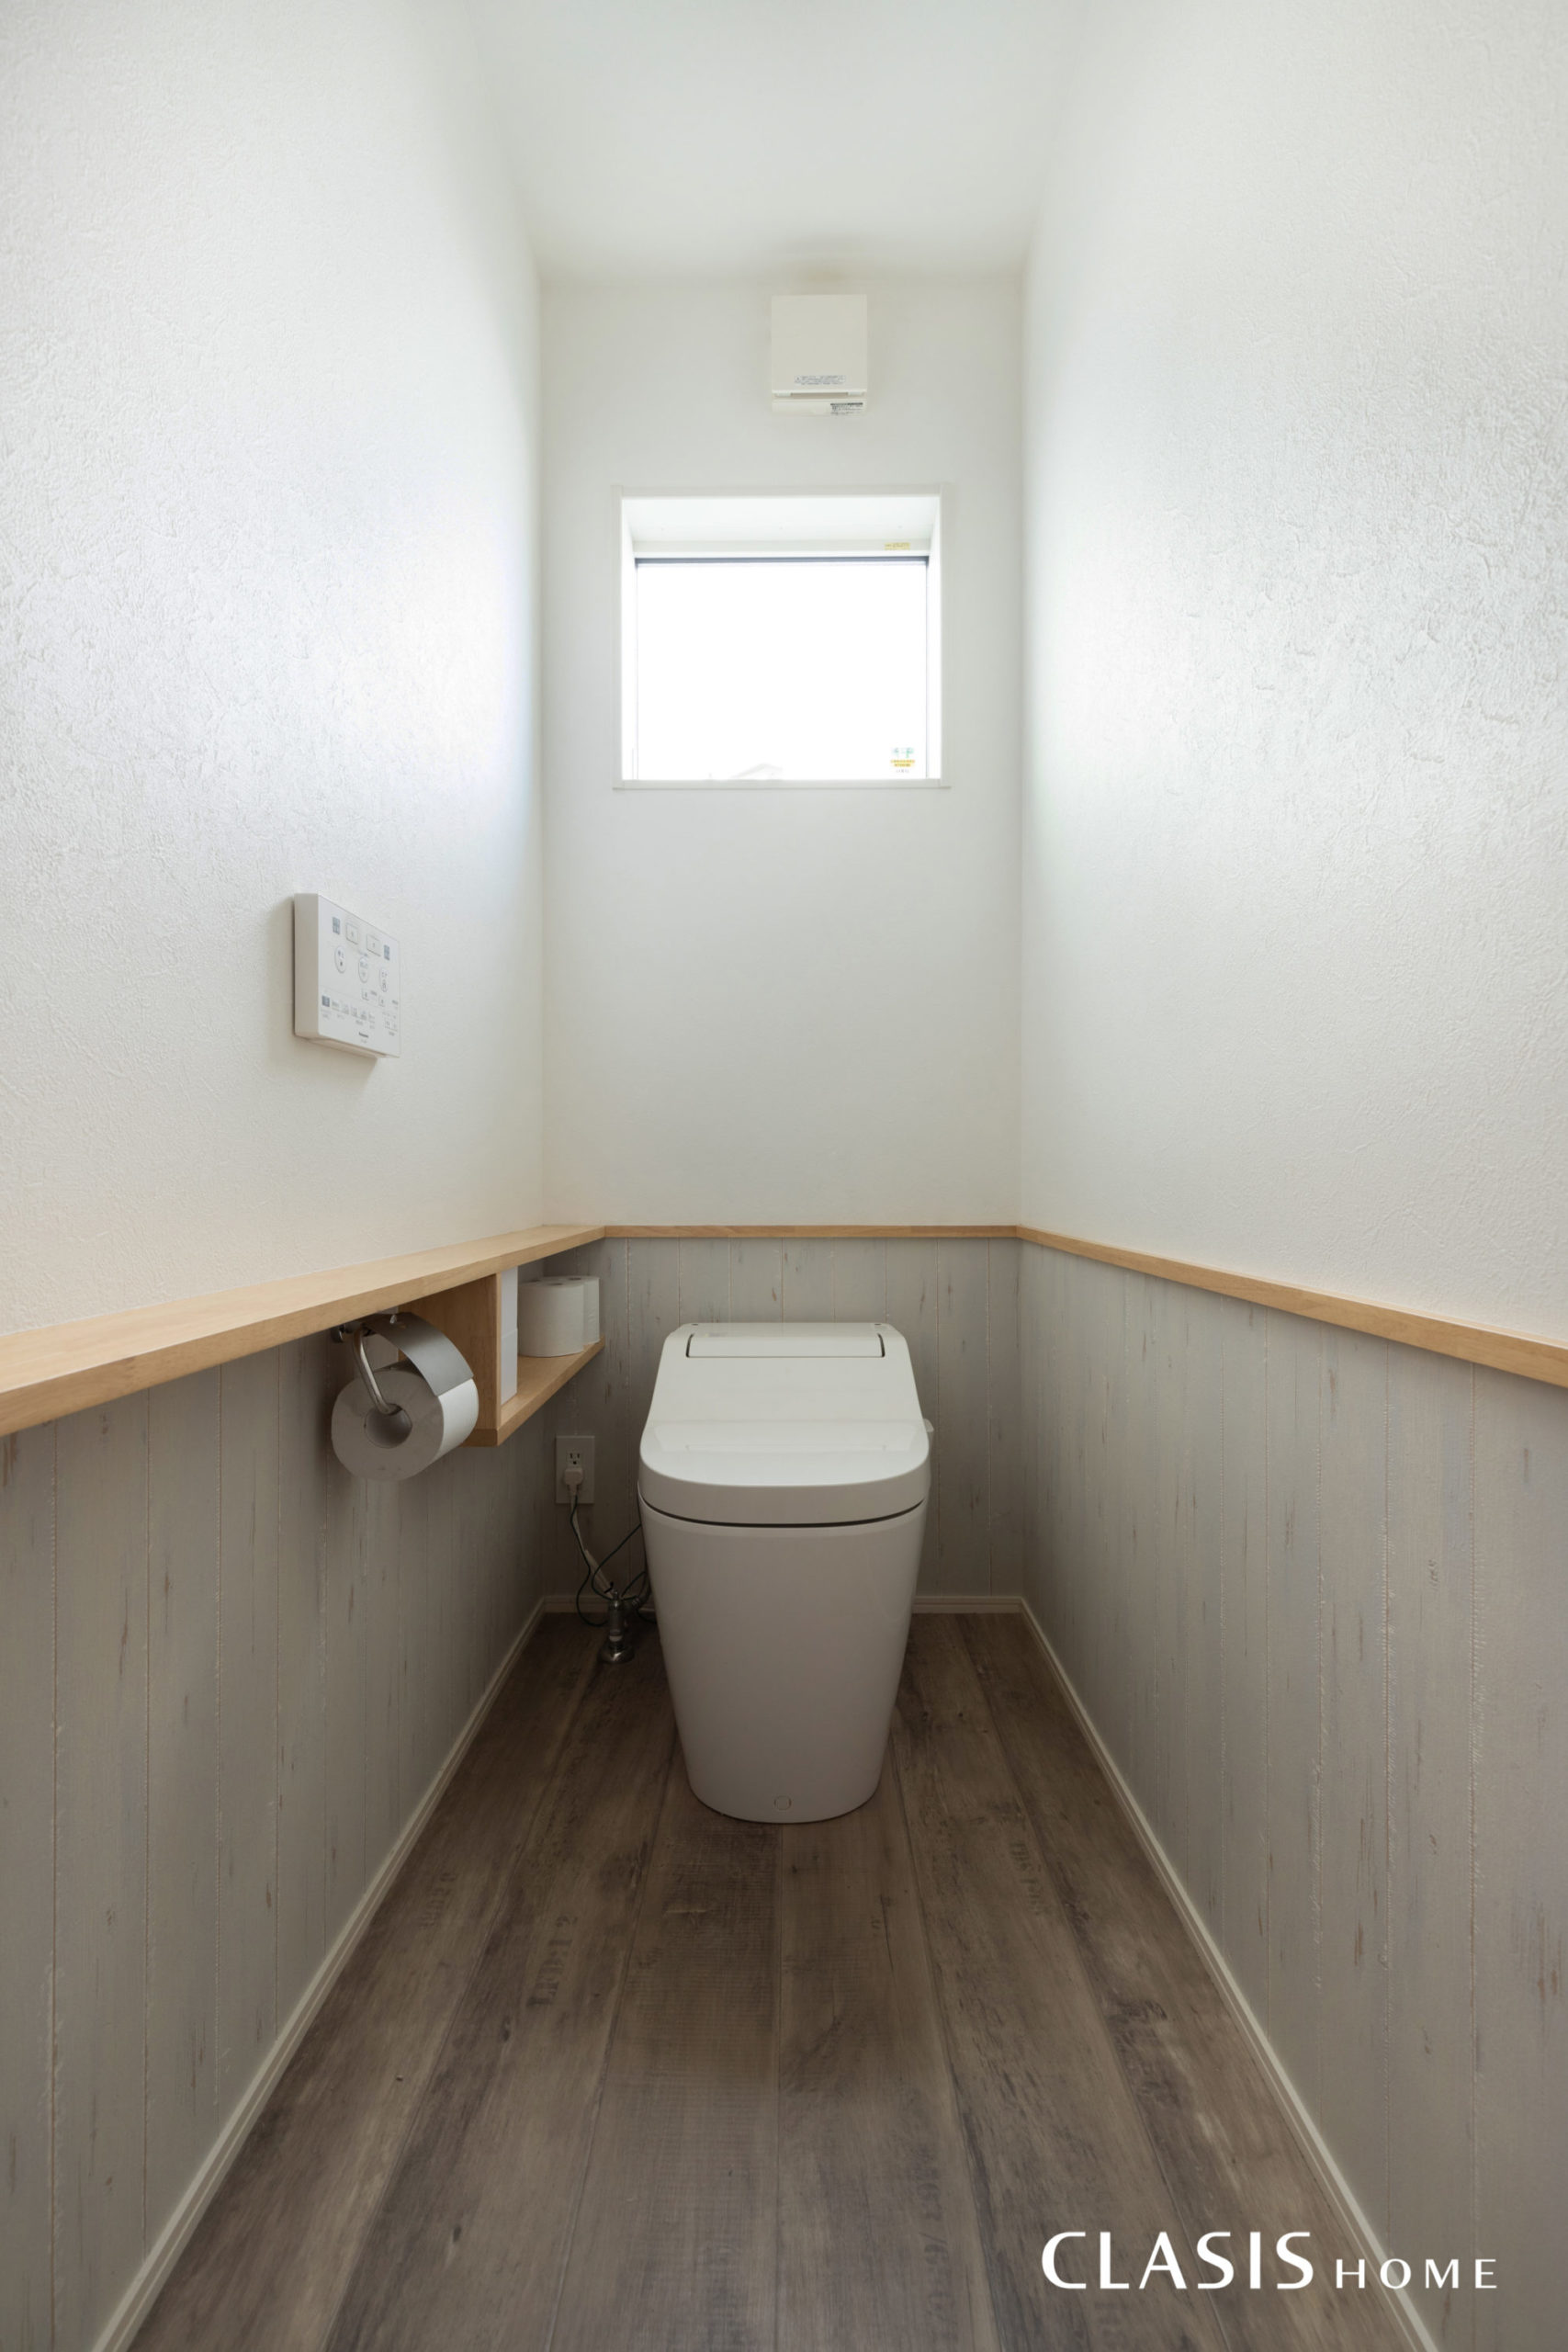 他の空間とは色合いを変え、フレンチカントリーなテイストのトイレ。